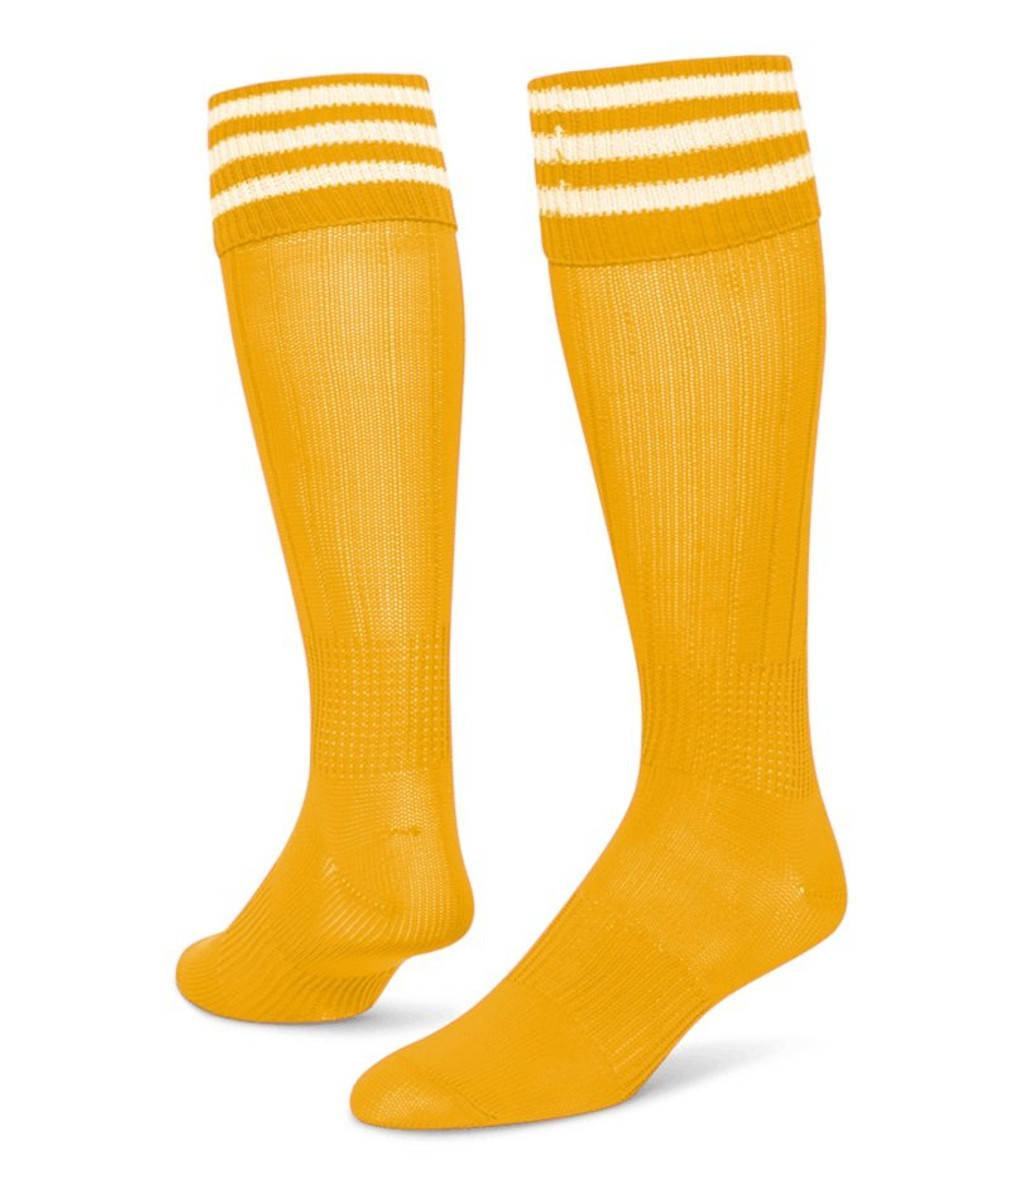 3 Stripe Striker Knee High Sports Socks - Gold White